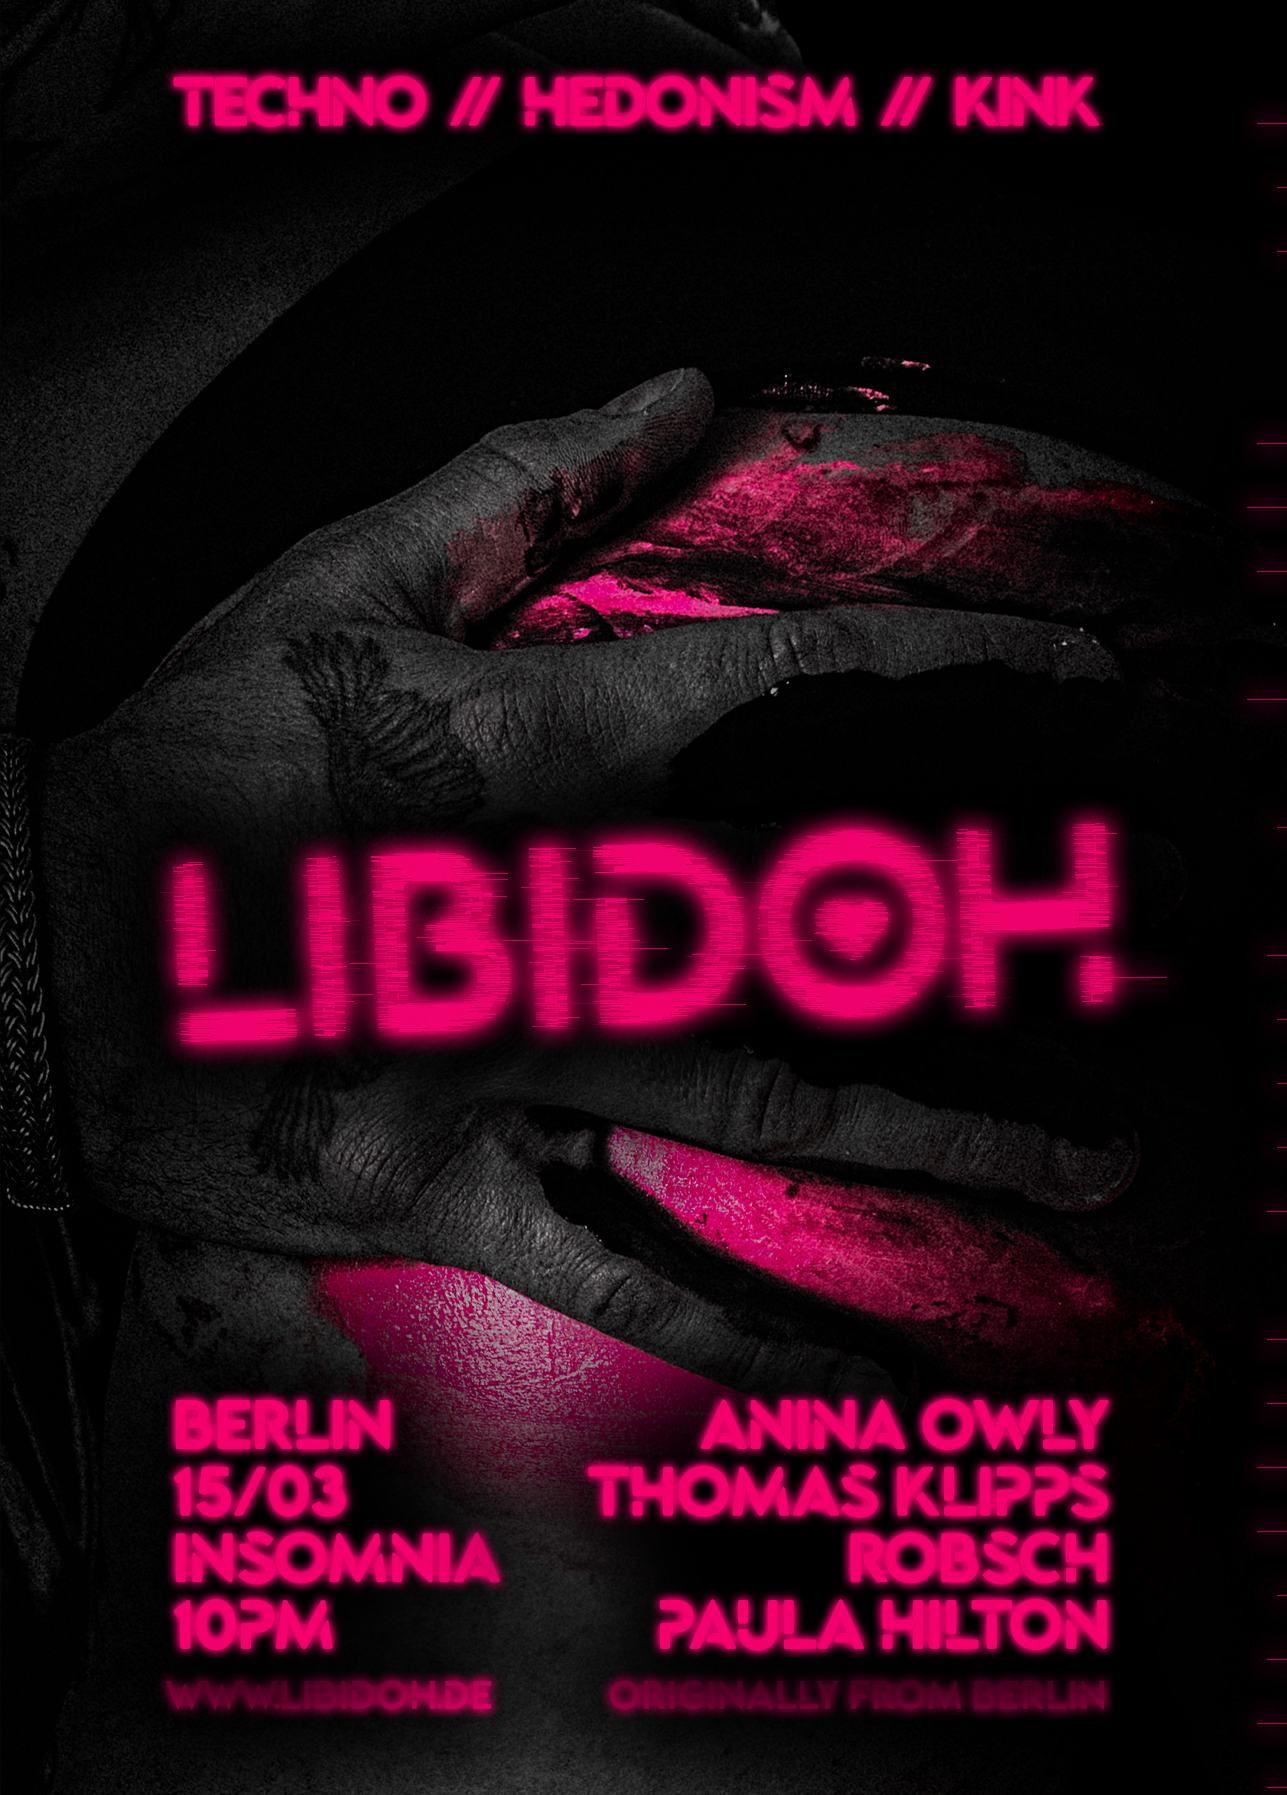 LIBIDOH with Anina Owly & Thomas Klipps - Página frontal